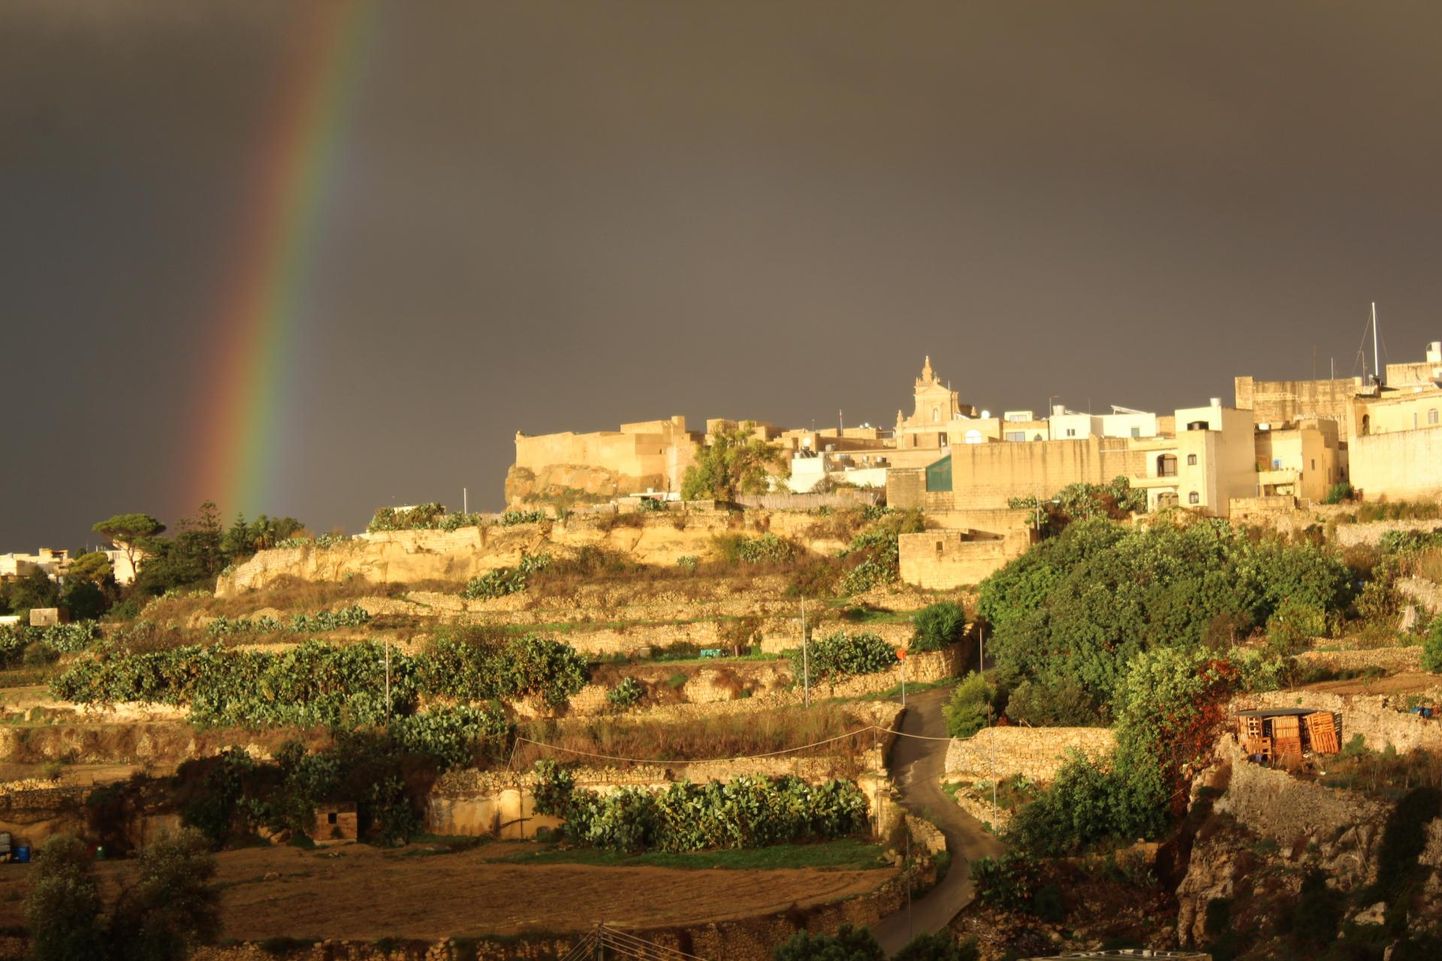 Päikesepaistelisi päevi on Maltal umbes 300. Kui aga juba kord sajab, siis muutuvad tänavad sageli koskedeks, vihmavarjudest suurt abi ei ole. Għawdexi ehk Gozo saare pealinn Valetta jäi fotole kahe vägeva saju vahelise hetke silmipimestavas päikesesäras, mis kestis vähem kui minut. Edasi kallas hommikuni nagu pangest.